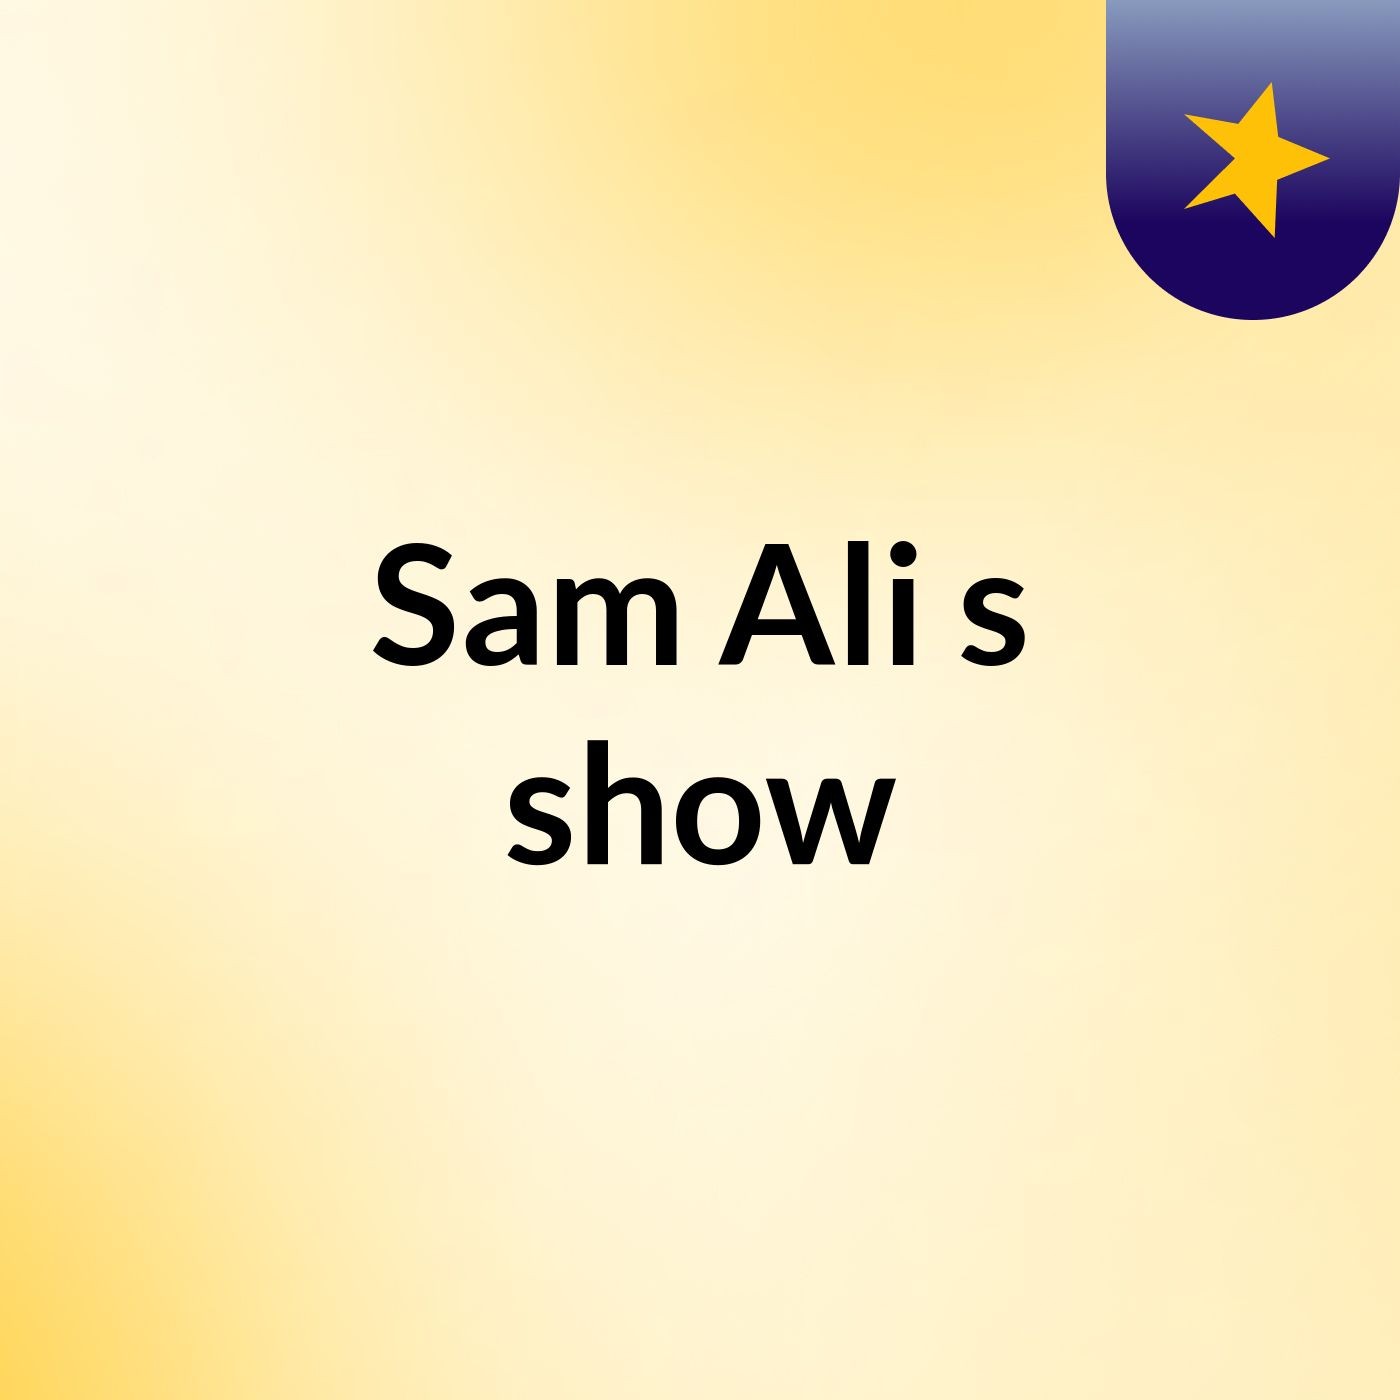 Sam Ali's show